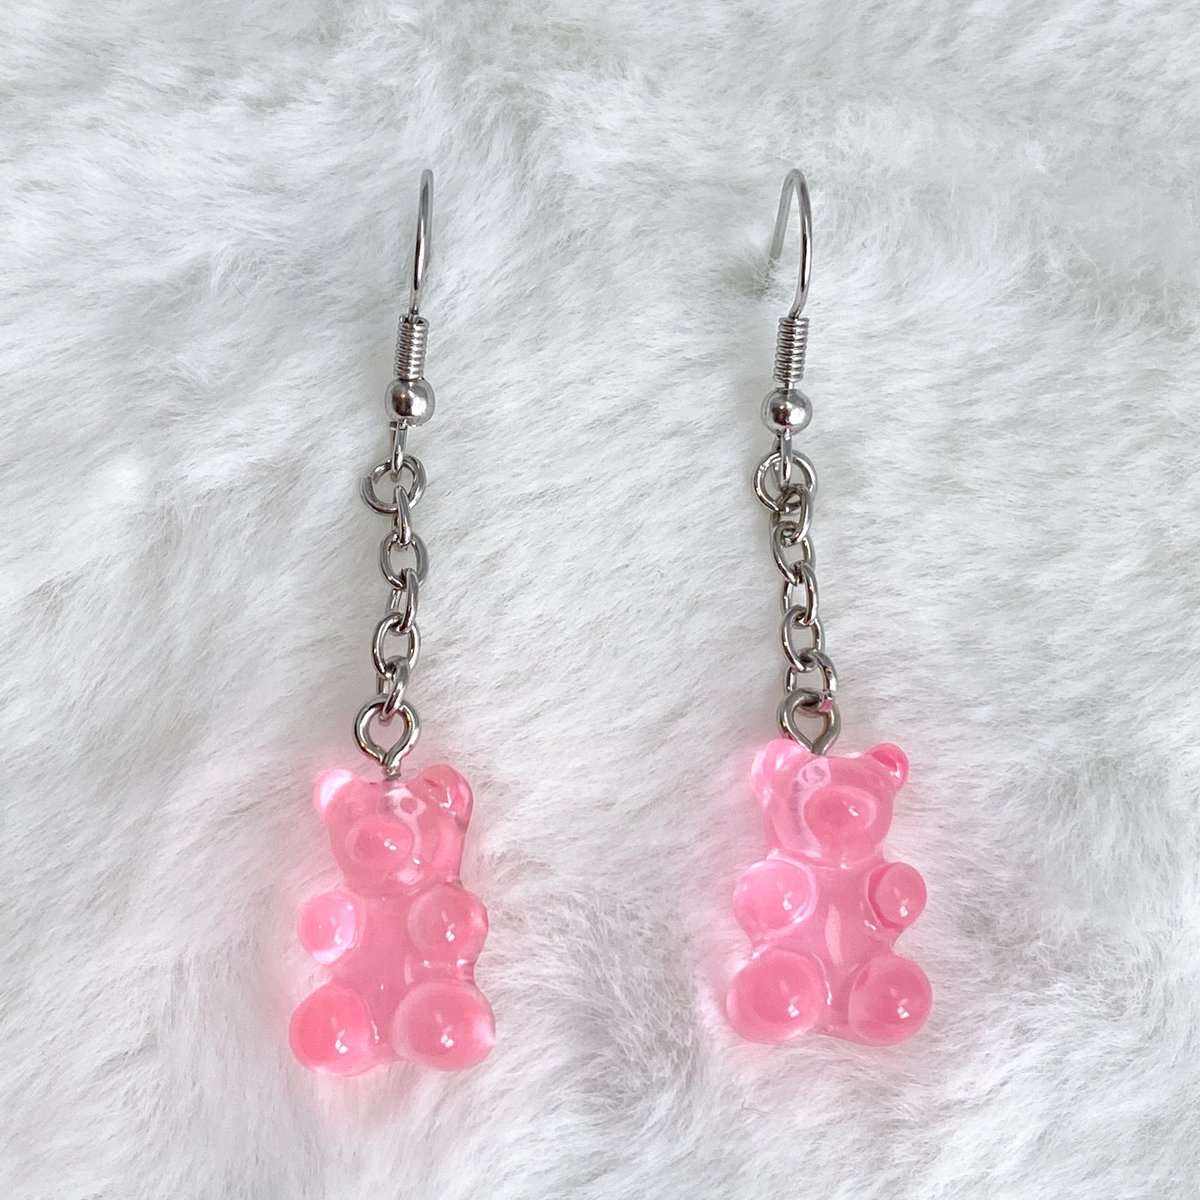 Pink Gummy Bear Drop Earrings, Gummy Bear Earrings, Bear Jewelry, Cute Drop Earrings, Funky Earrings, Handmade Gift, S103 tuppu.net/2b18afcf #SmallBusiness #Handmade #Jewelry #GiftforHer #EtsyJewelry #EtsyShop #Earrings #PinkEarrings